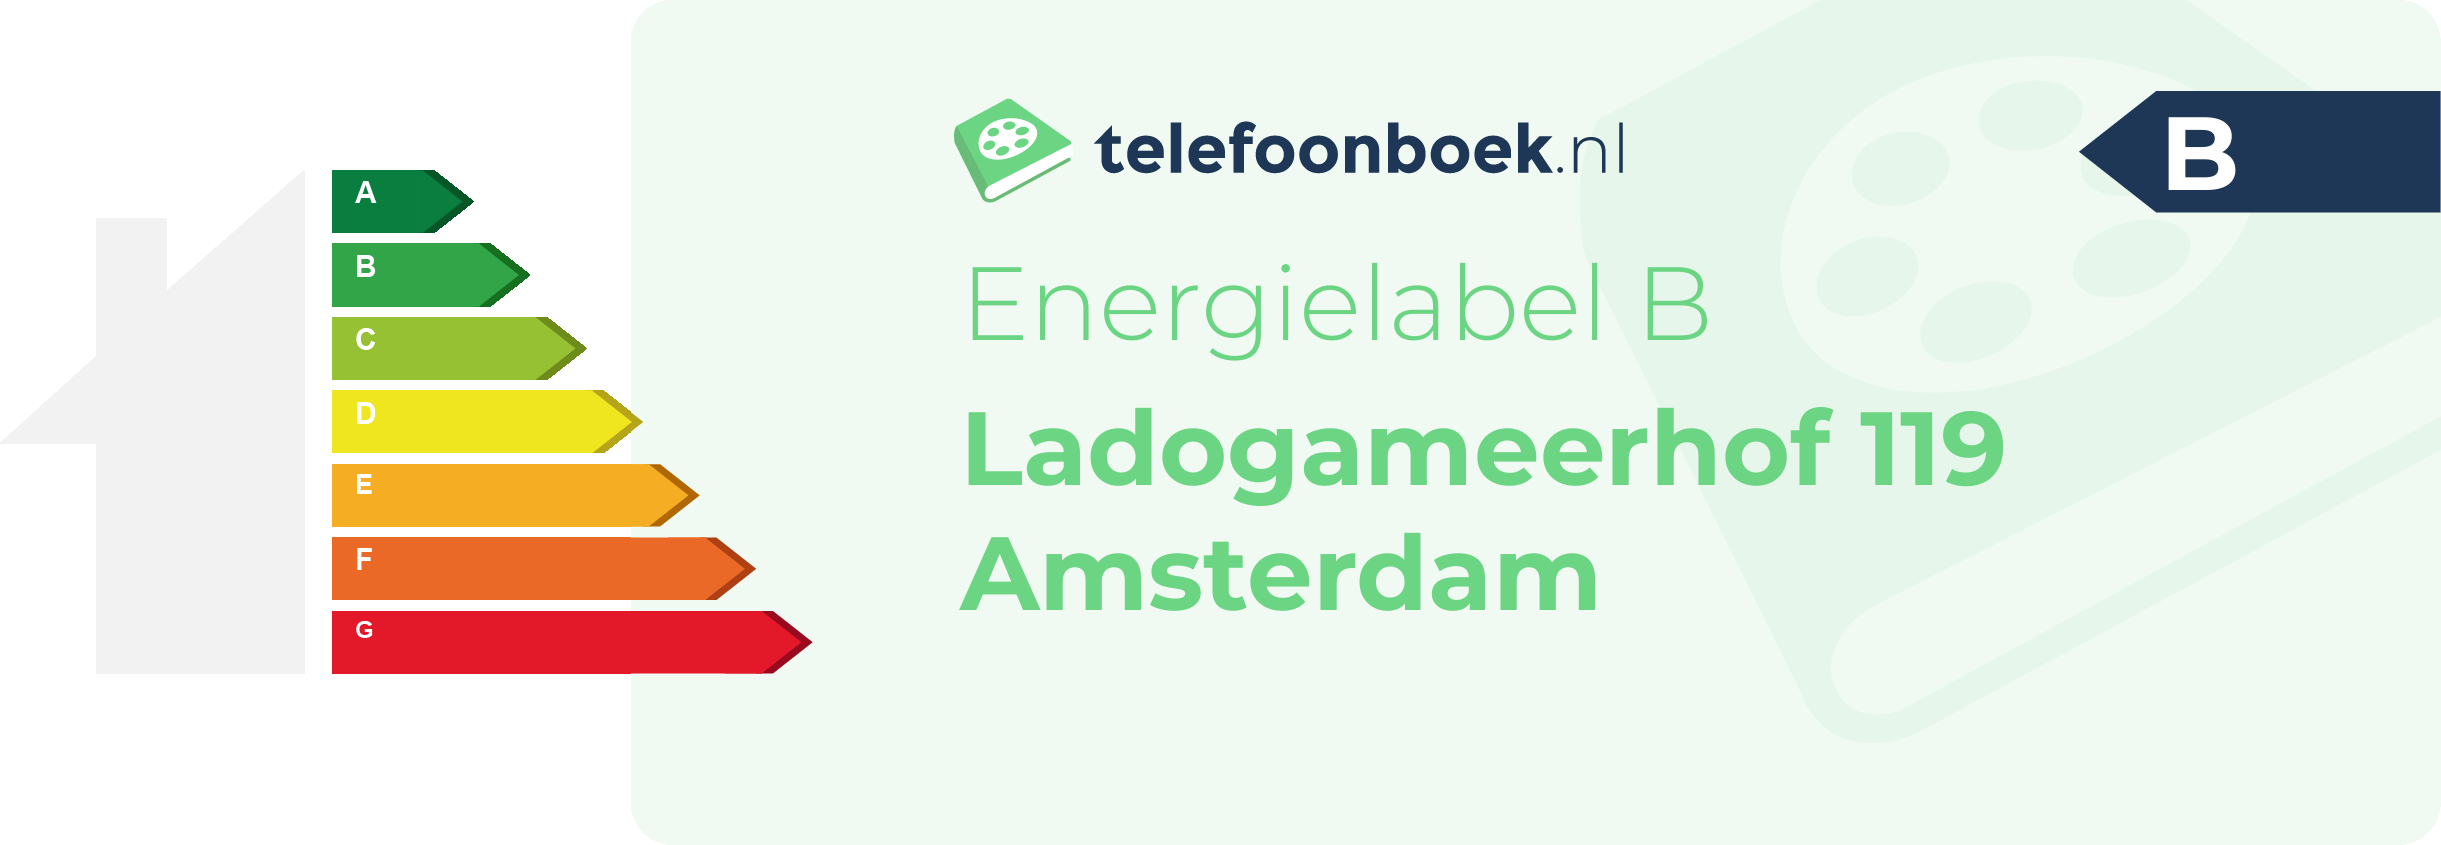 Energielabel Ladogameerhof 119 Amsterdam